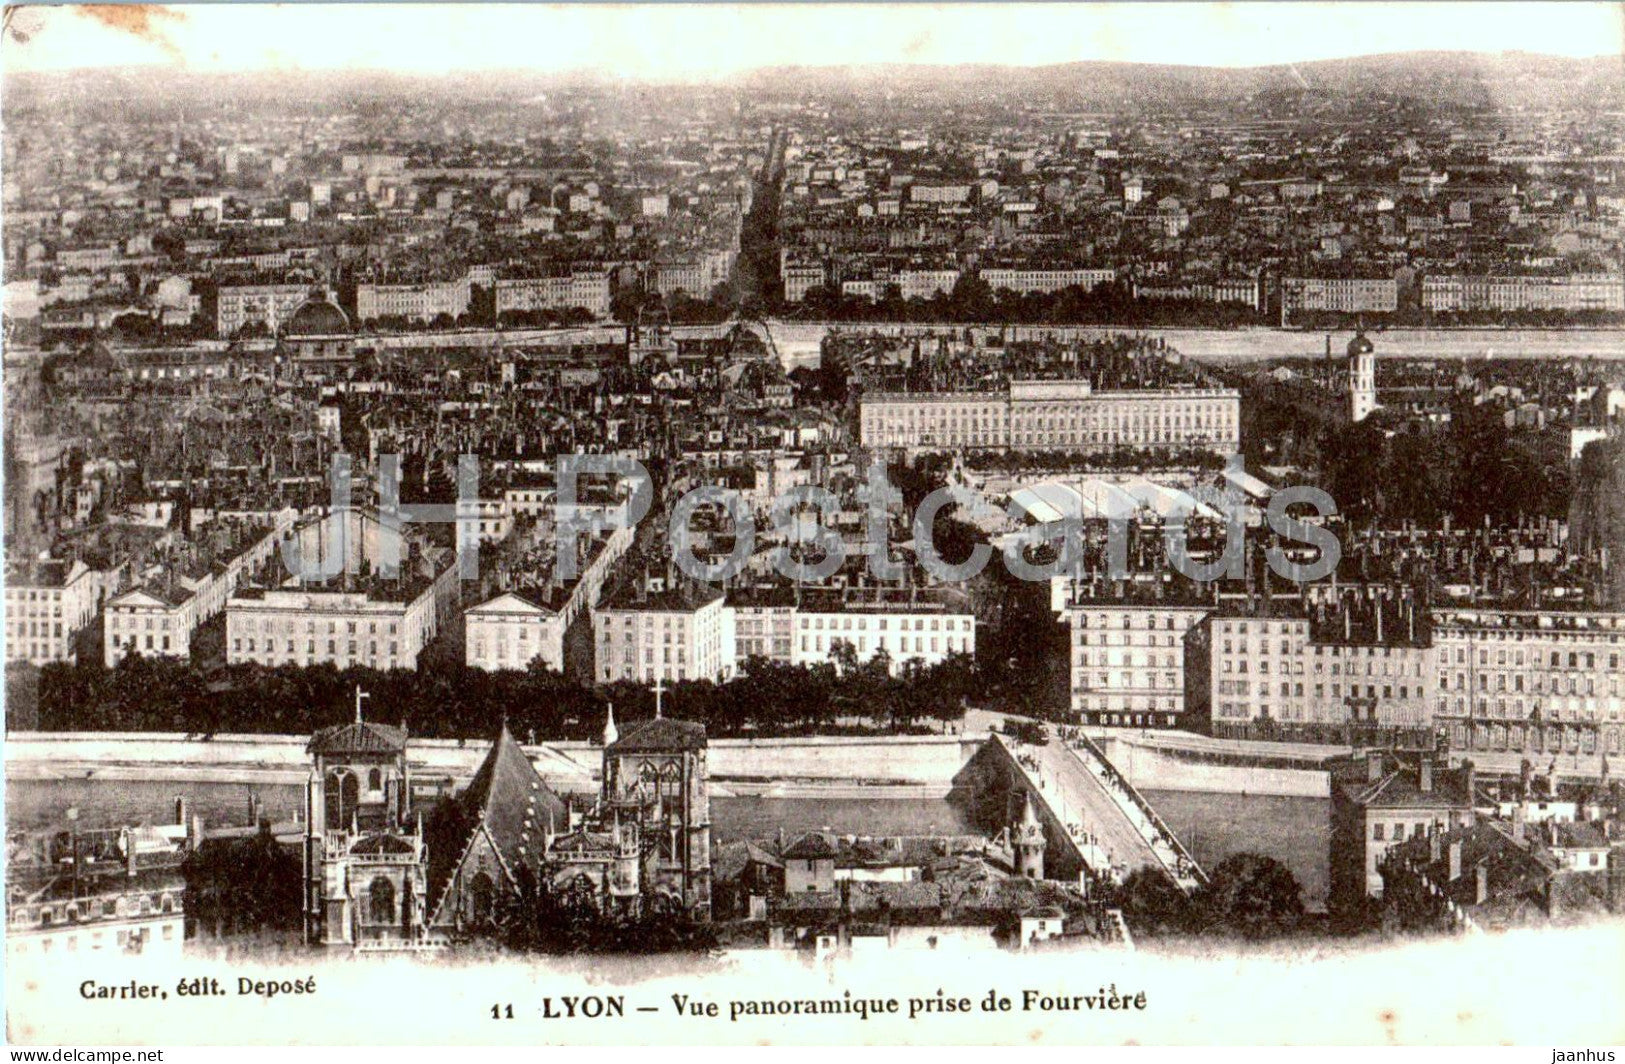 Lyon - Vue panoramique prise de Fourviere - 11 - old postcard - 1918 - France - used - JH Postcards